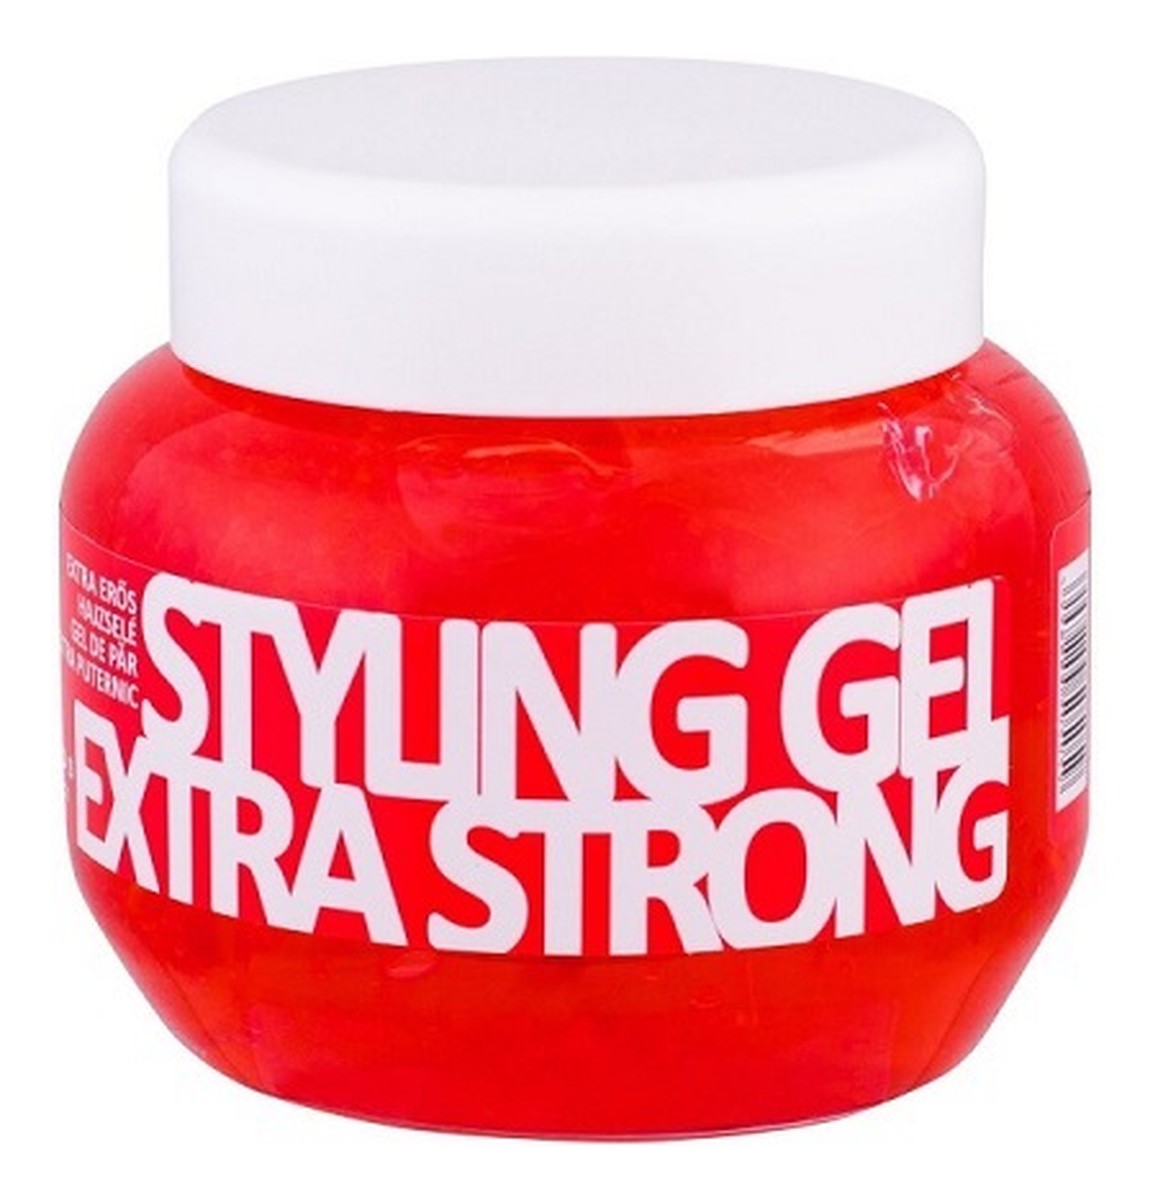 Styling Gel Extra Hold Żel do stylizacji włosów (czerwony)